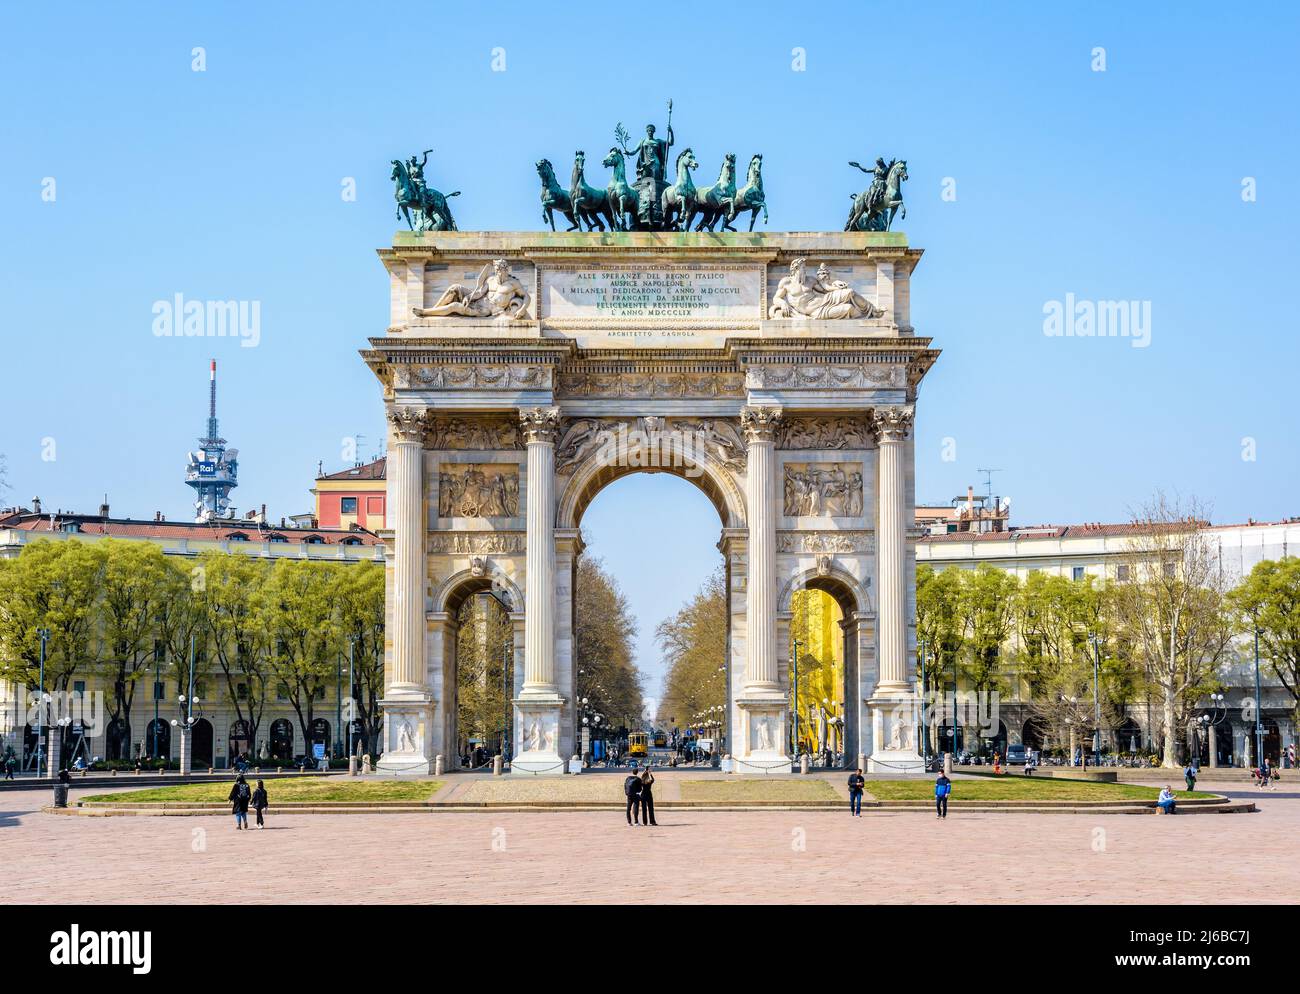 Vista frontal del Arco della Pace (Arco de la Paz), un arco triunfal neoclásico situado en Porta Sempione (Puerta Simplon) en Milán, Italia. Foto de stock